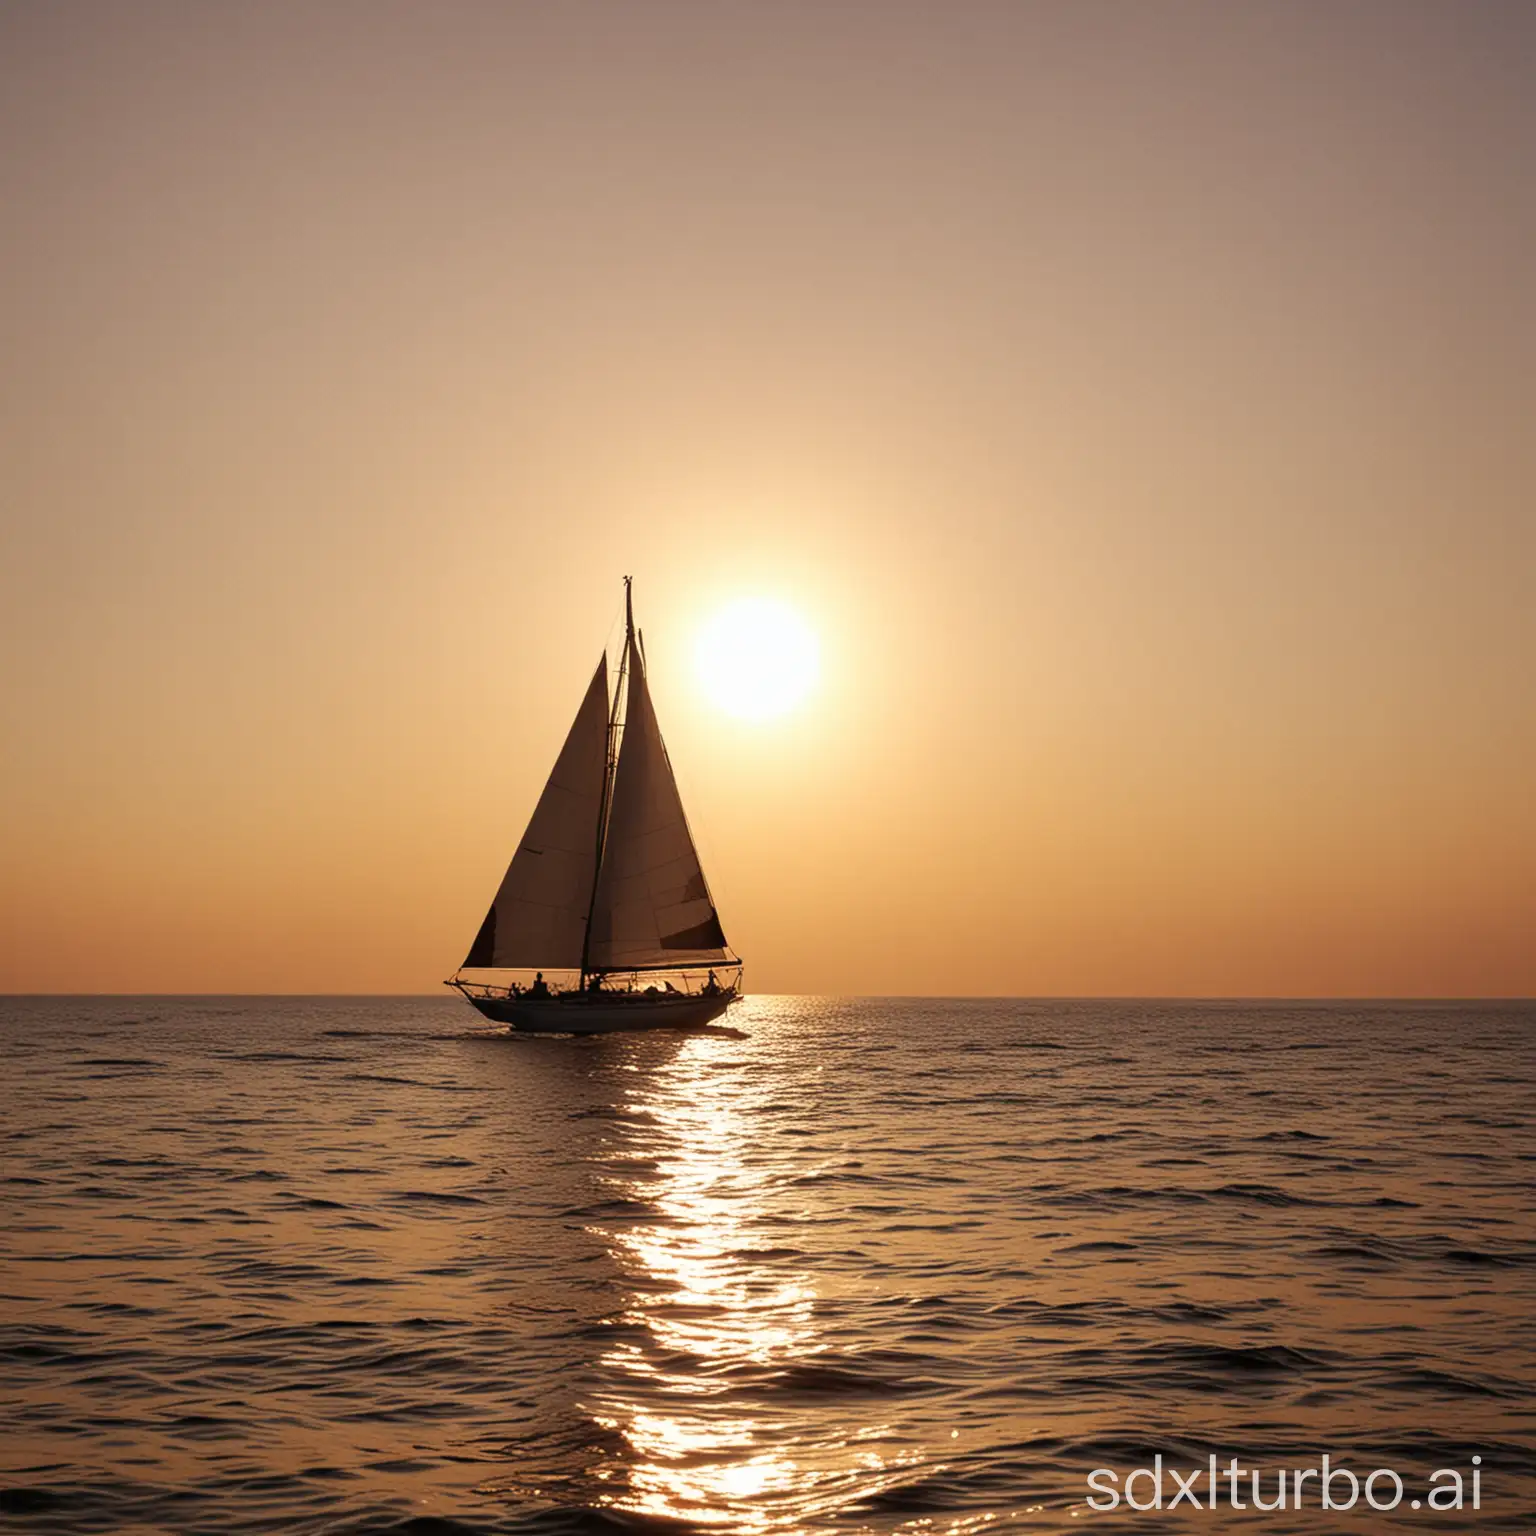 un voilier qui s'éloigne sur la mer au soleil couchant
